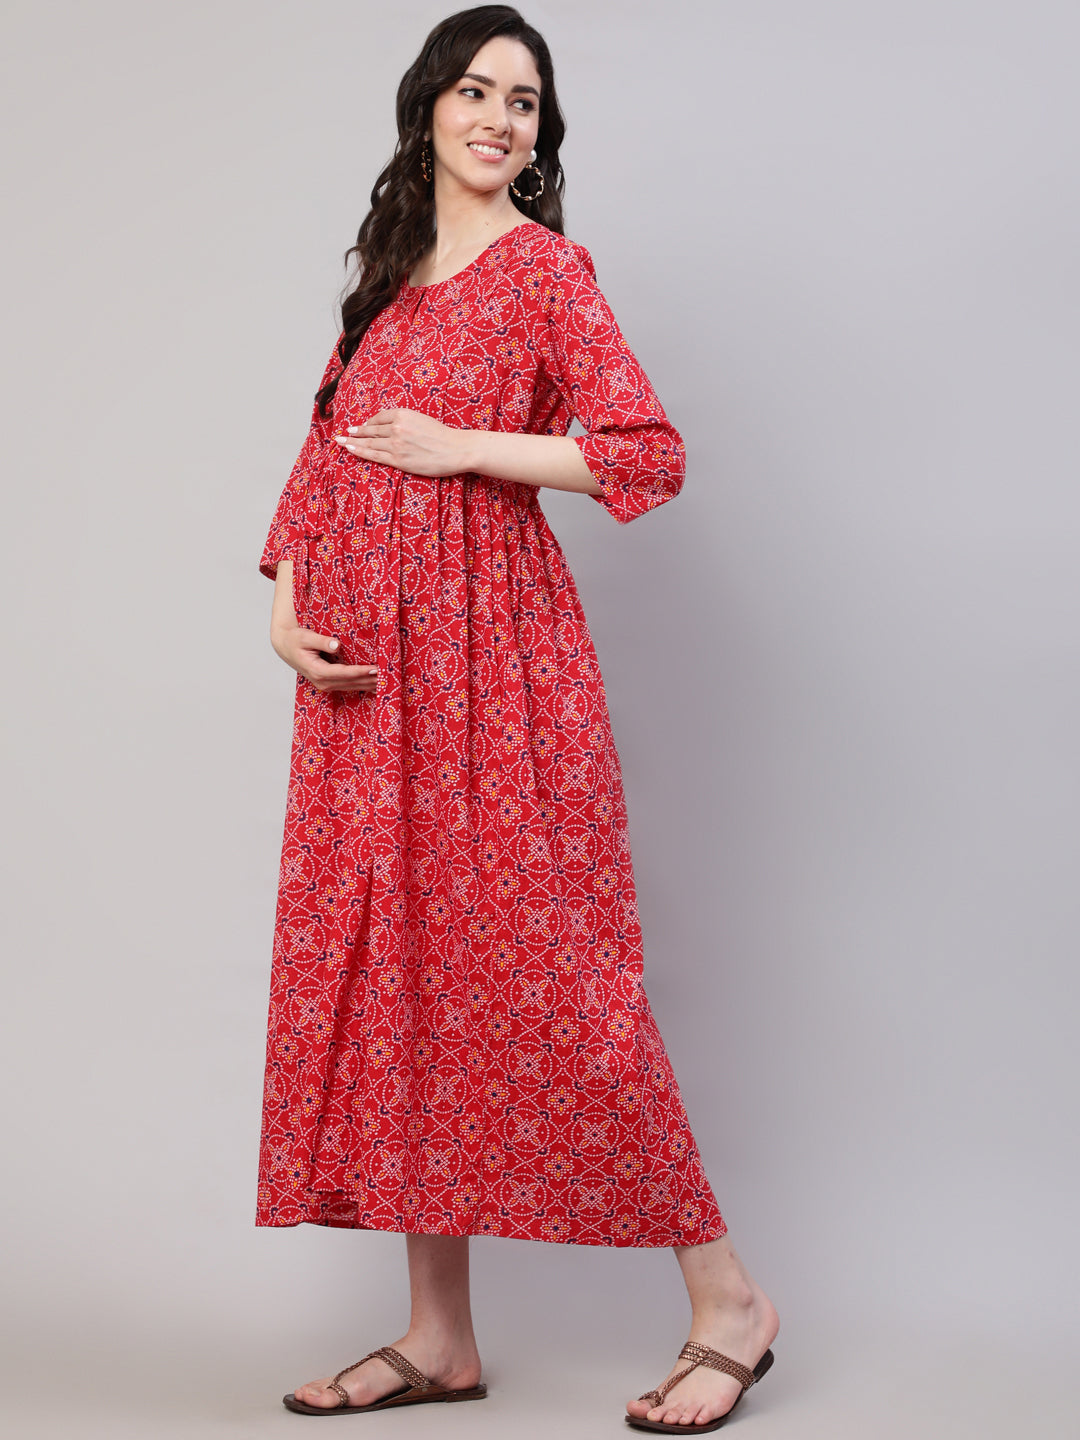 Negen Women' Maternity Dress for Feeding with Zippers Pregnancy Dress  Breastfeed | eBay